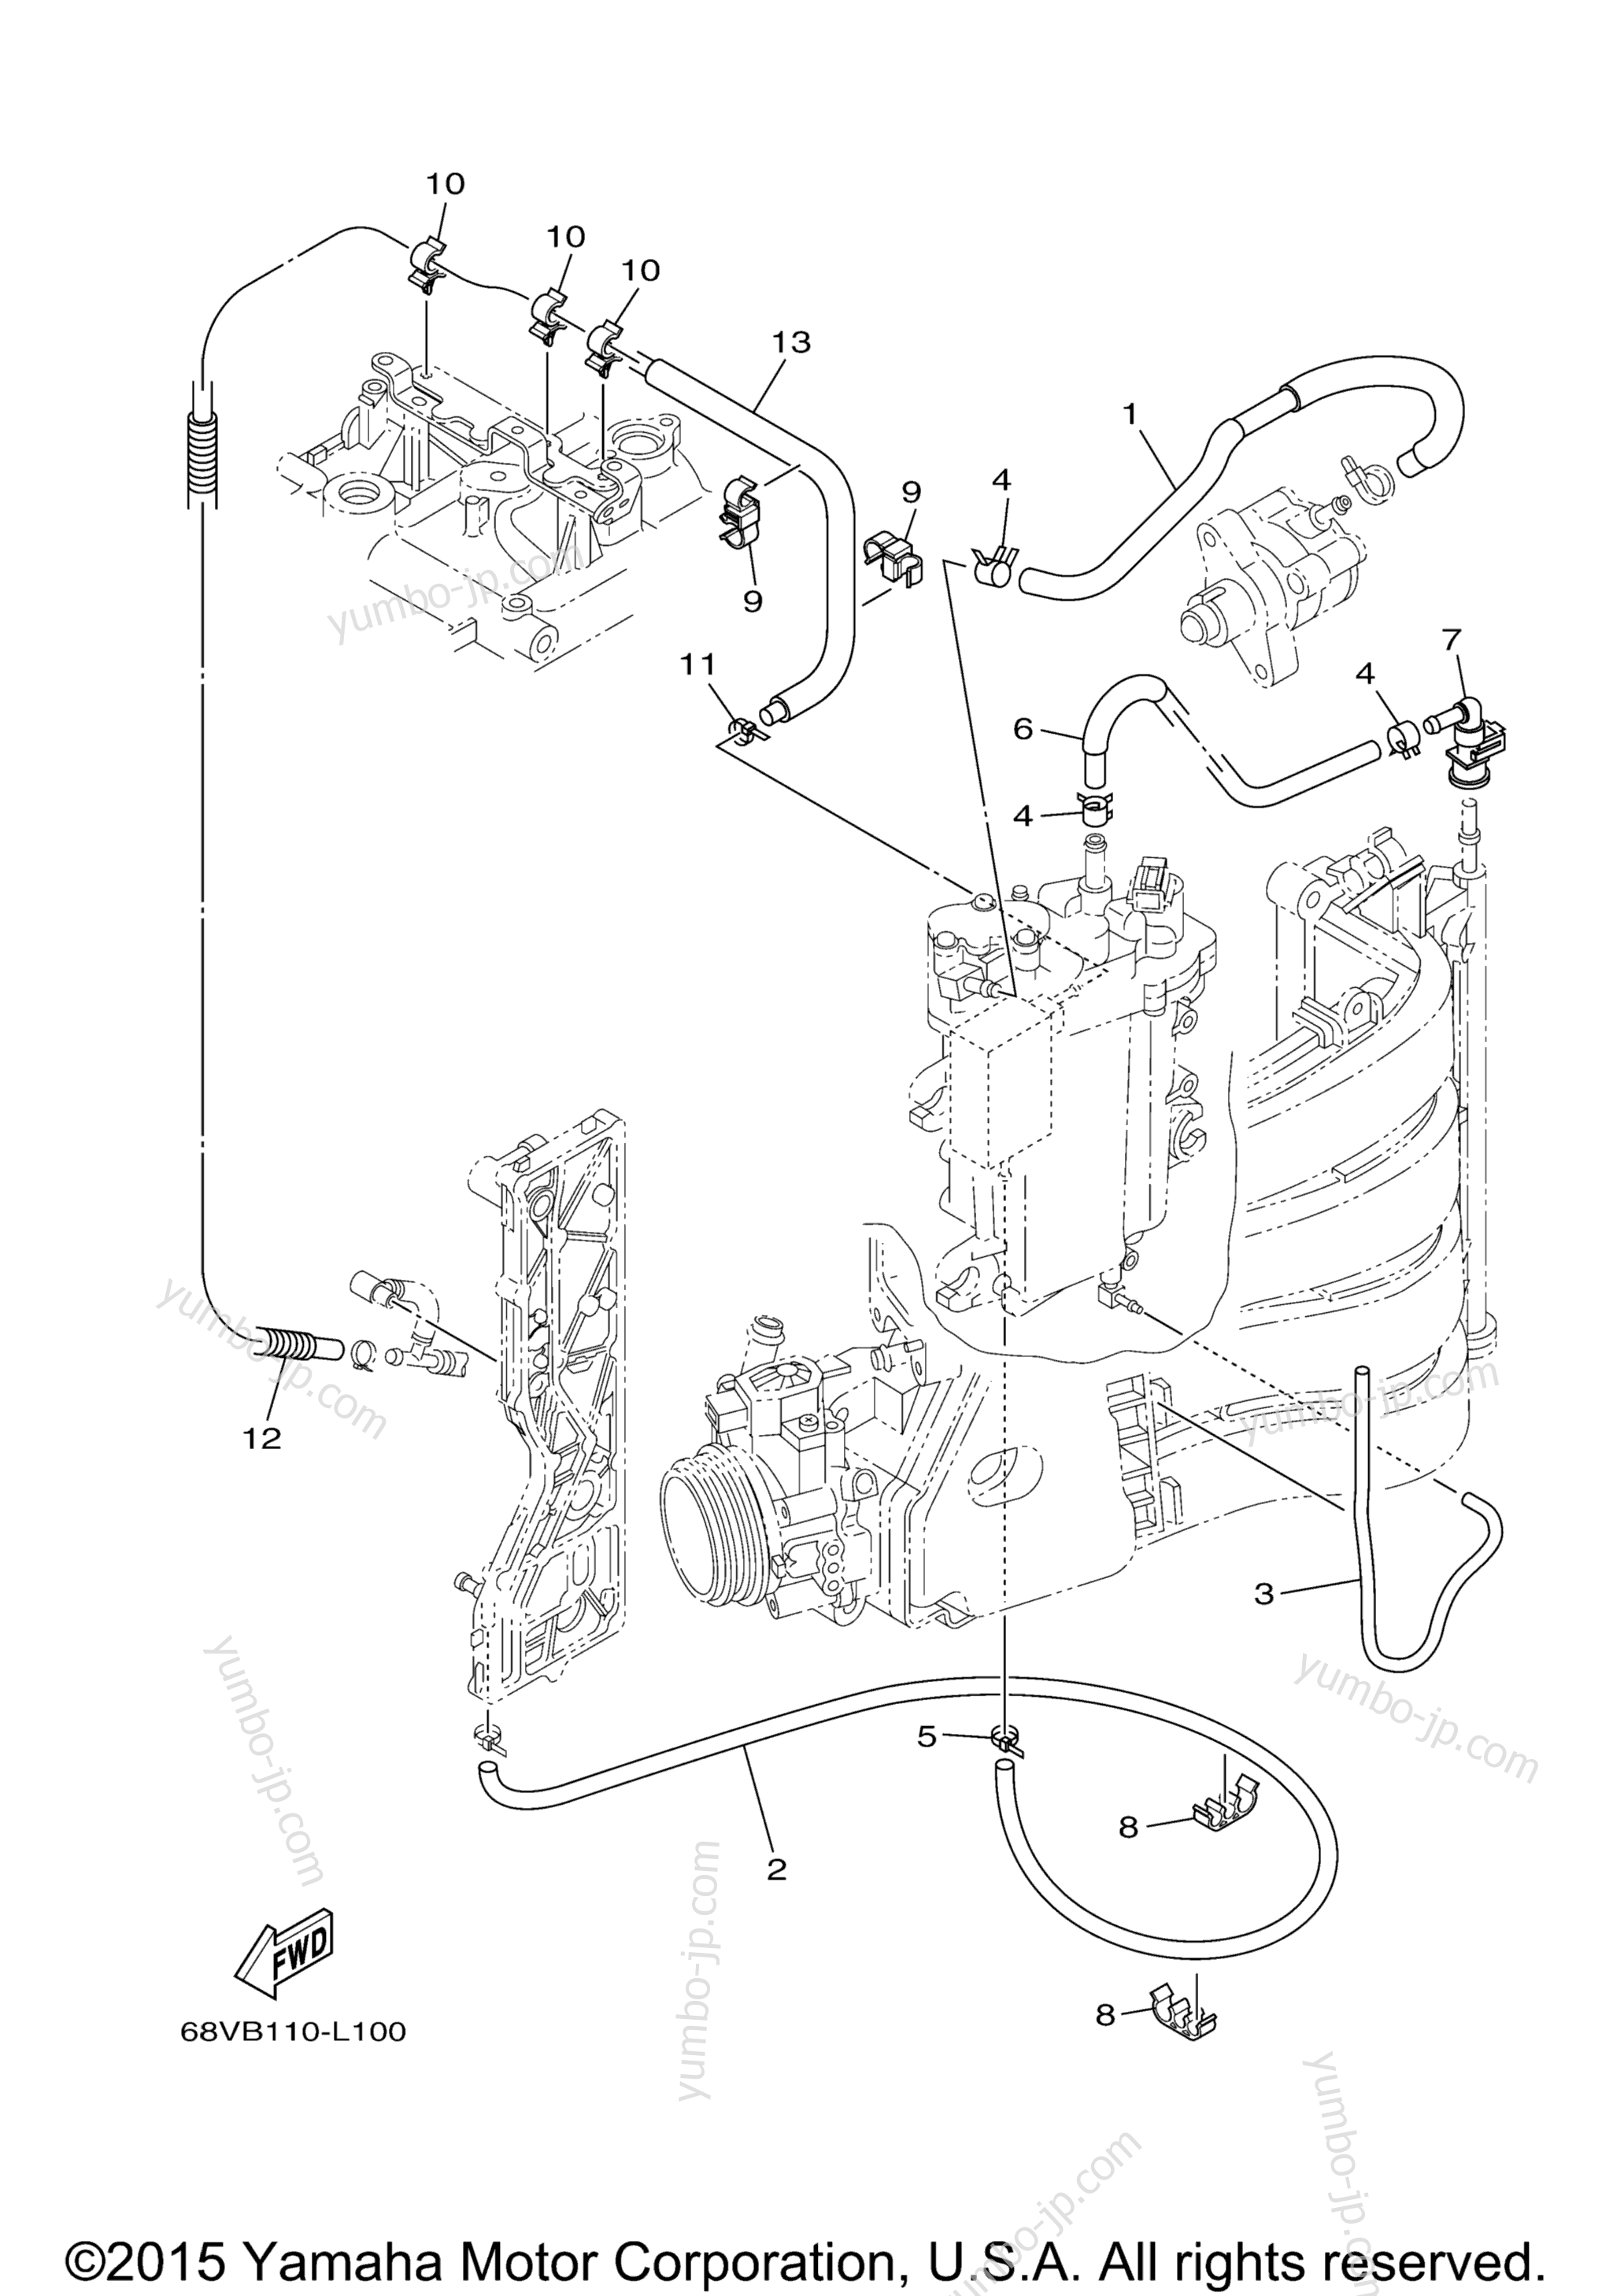 Fuel Injection Pump 2 для лодочных моторов YAMAHA F115XA_061 (0611) 2006 г.